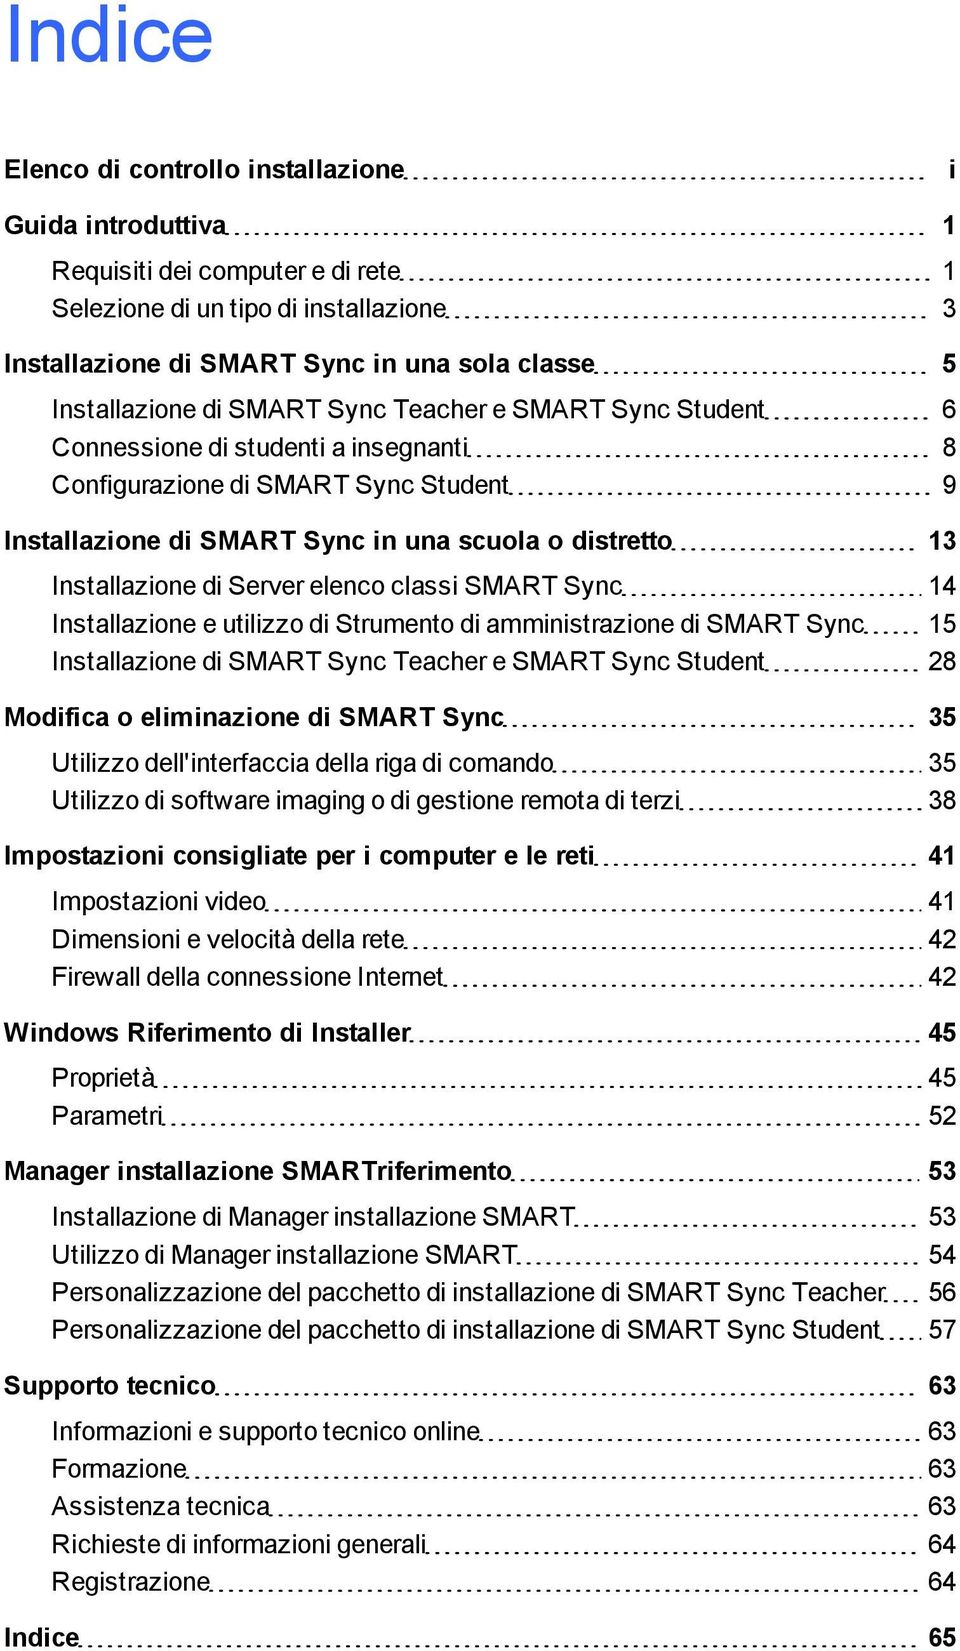 Installazione di Server elenco classi SMART Sync 14 Installazione e utilizzo di Strumento di amministrazione di SMART Sync 15 Installazione di SMART Sync Teacher e SMART Sync Student 28 Modifica o